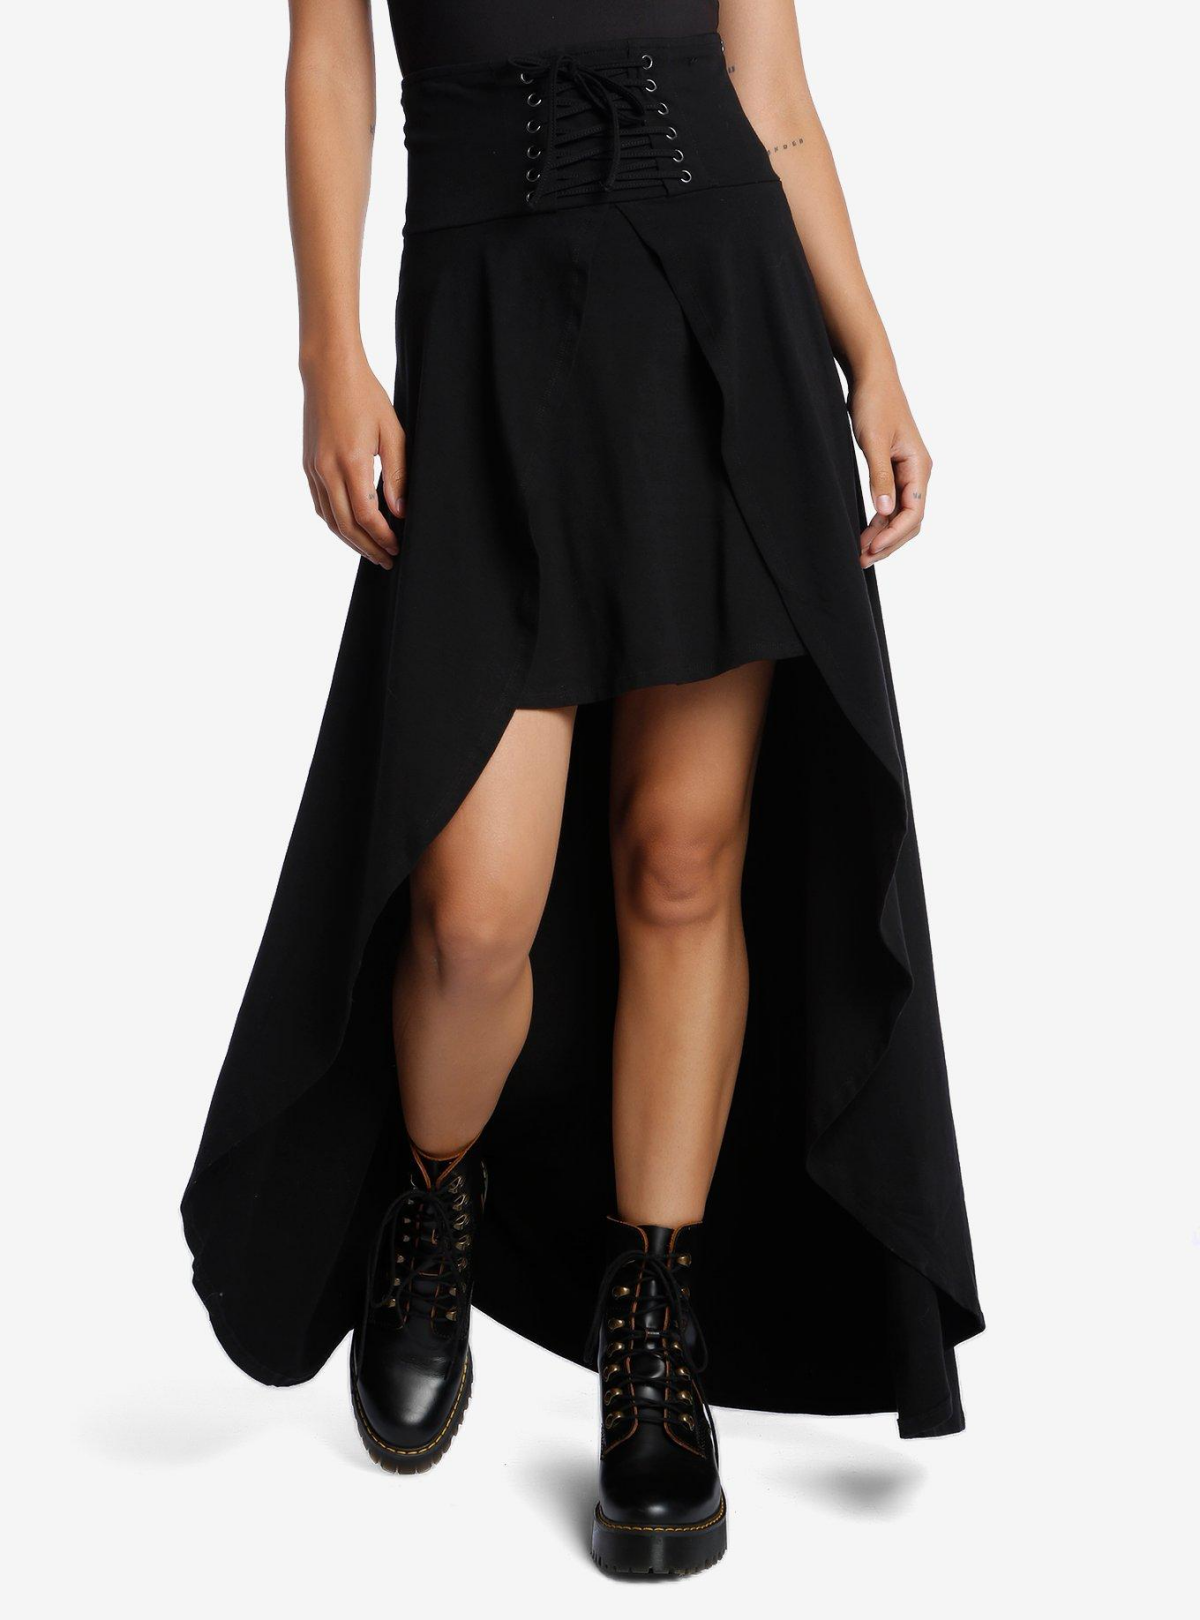 skirt styles high low black skirt